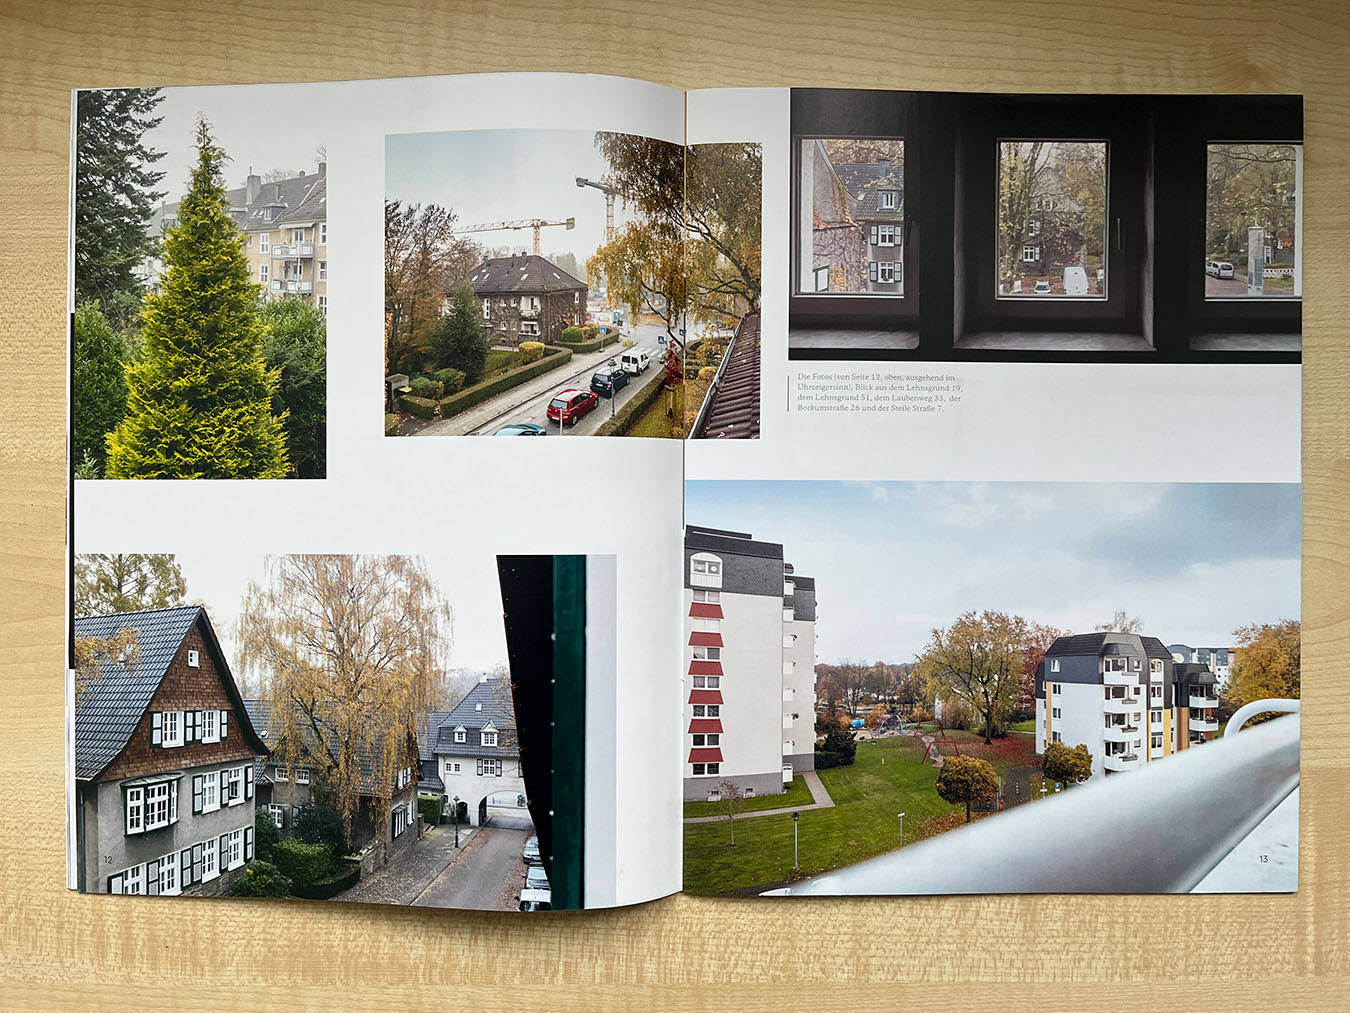 Veröffentlichung der Bildserie "Ausblicke" im Mietermagazin der Margarethe Krupp Stiftung, Essen